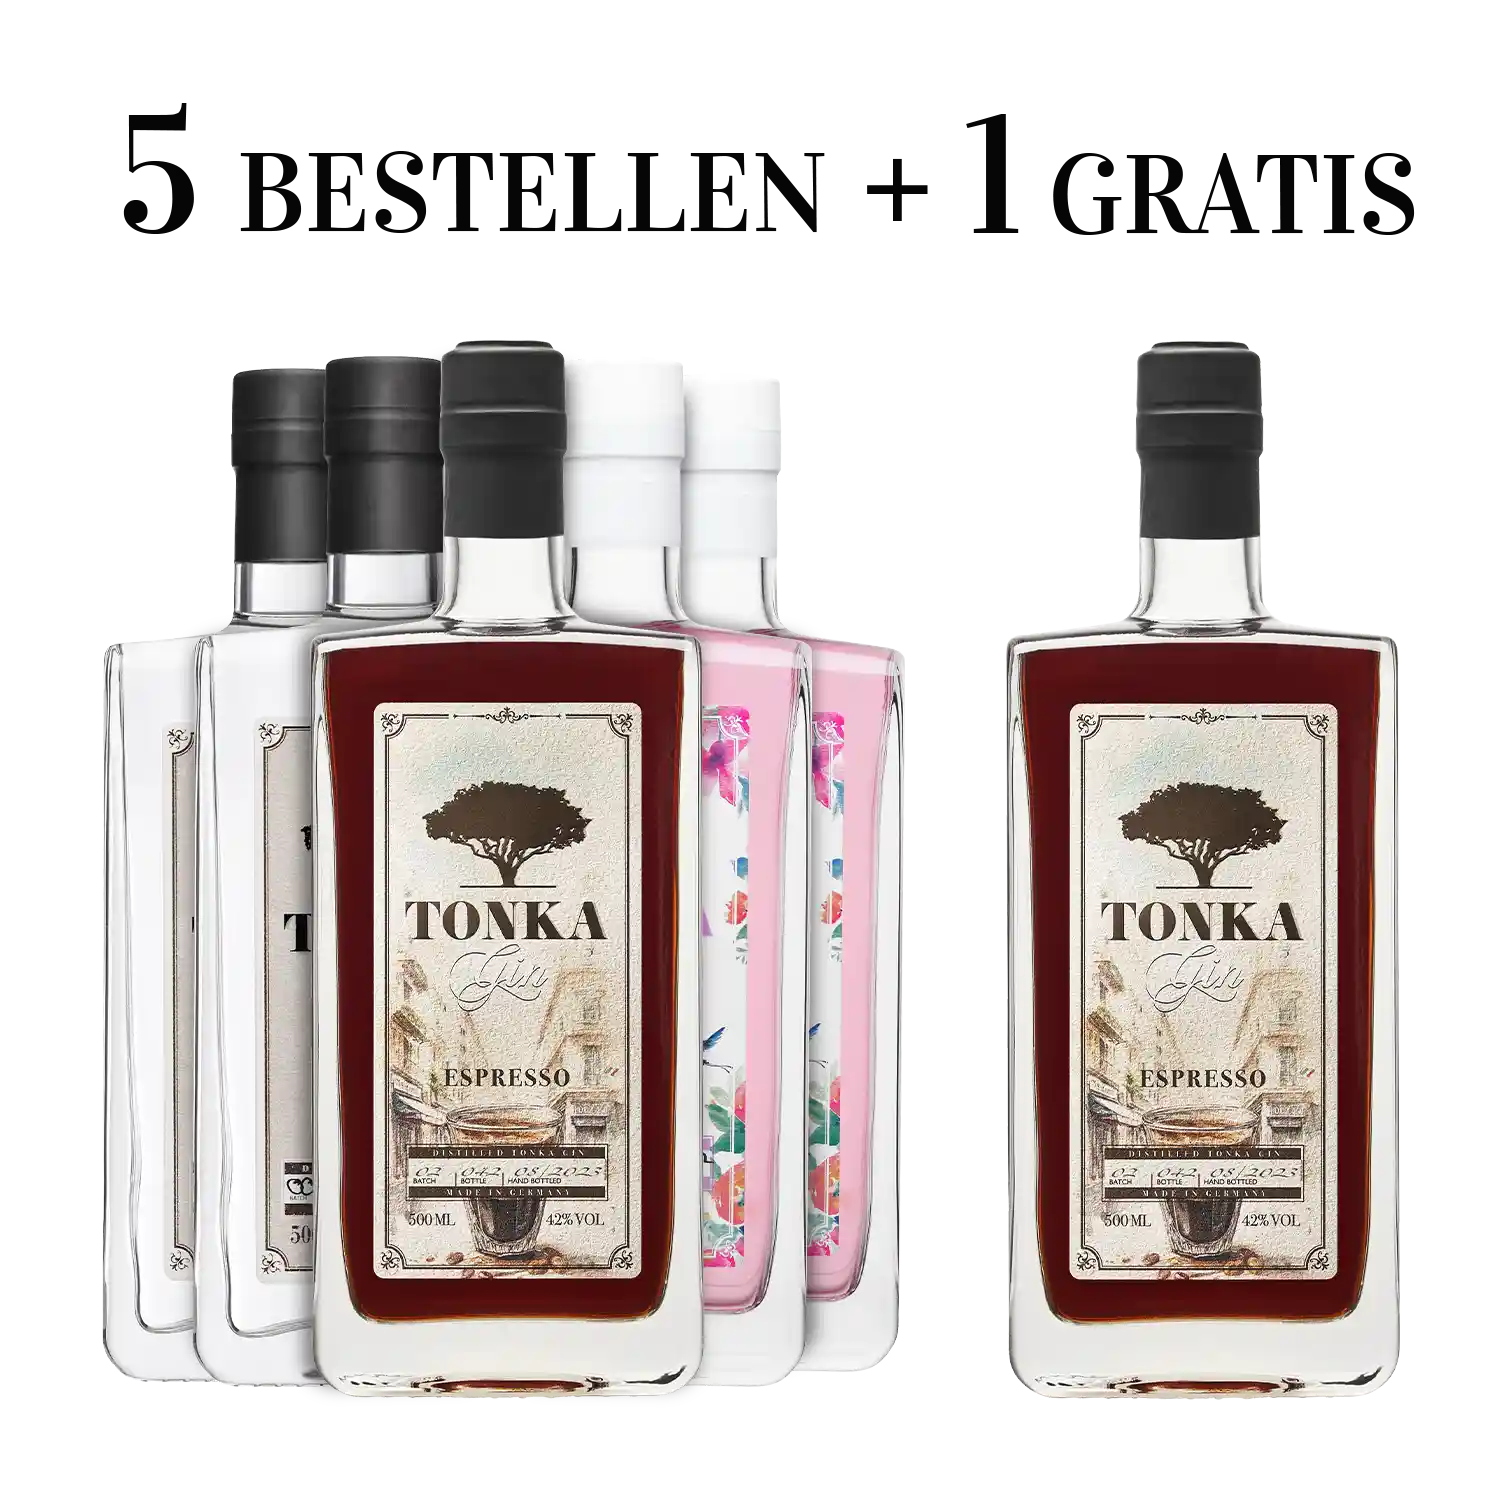 Spirituosenliebhaber Tonka & Gratis Gin & | Hibiskus – 1 Espresso | Klassik Vorteilspaket